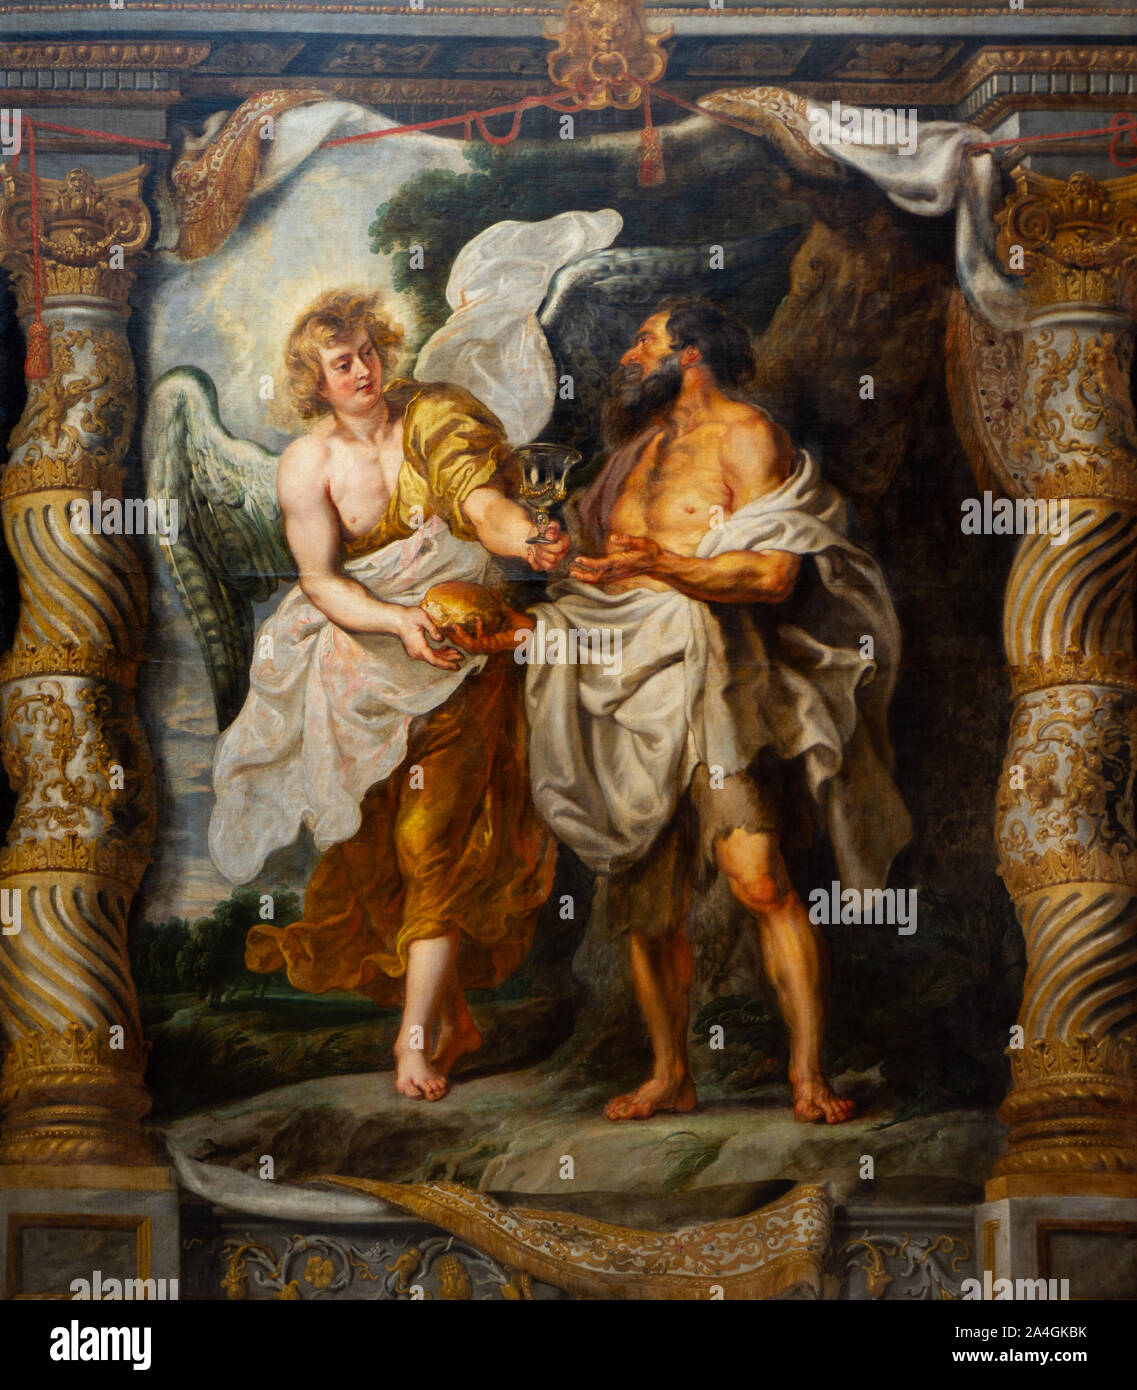 "Le prophète Elie et Un Ange dans le désert" de Peter Paul Rubens (1577-1640). Musée des Beaux-Arts de Valenciennes, France. Banque D'Images